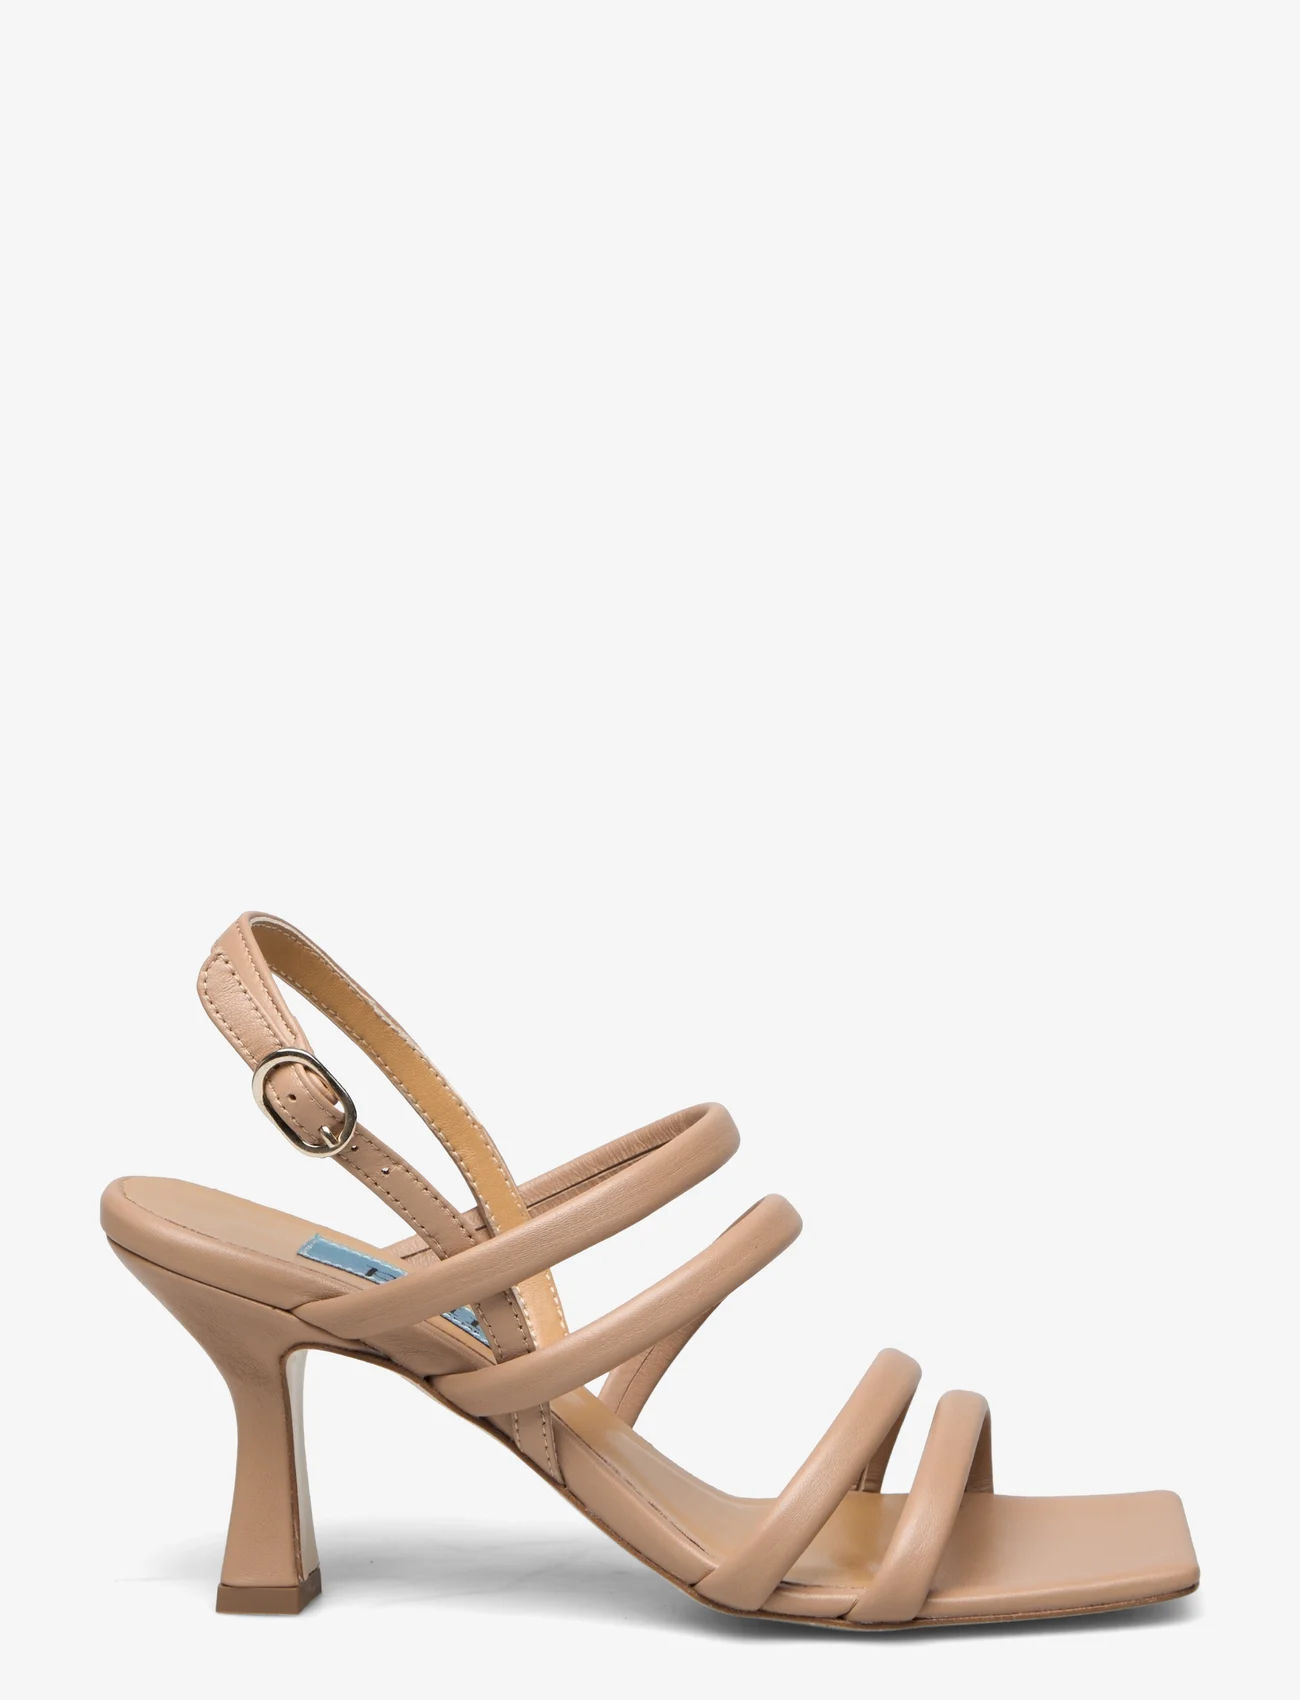 Apair - Multi stringg high heel - odzież imprezowa w cenach outletowych - natural tan - 1